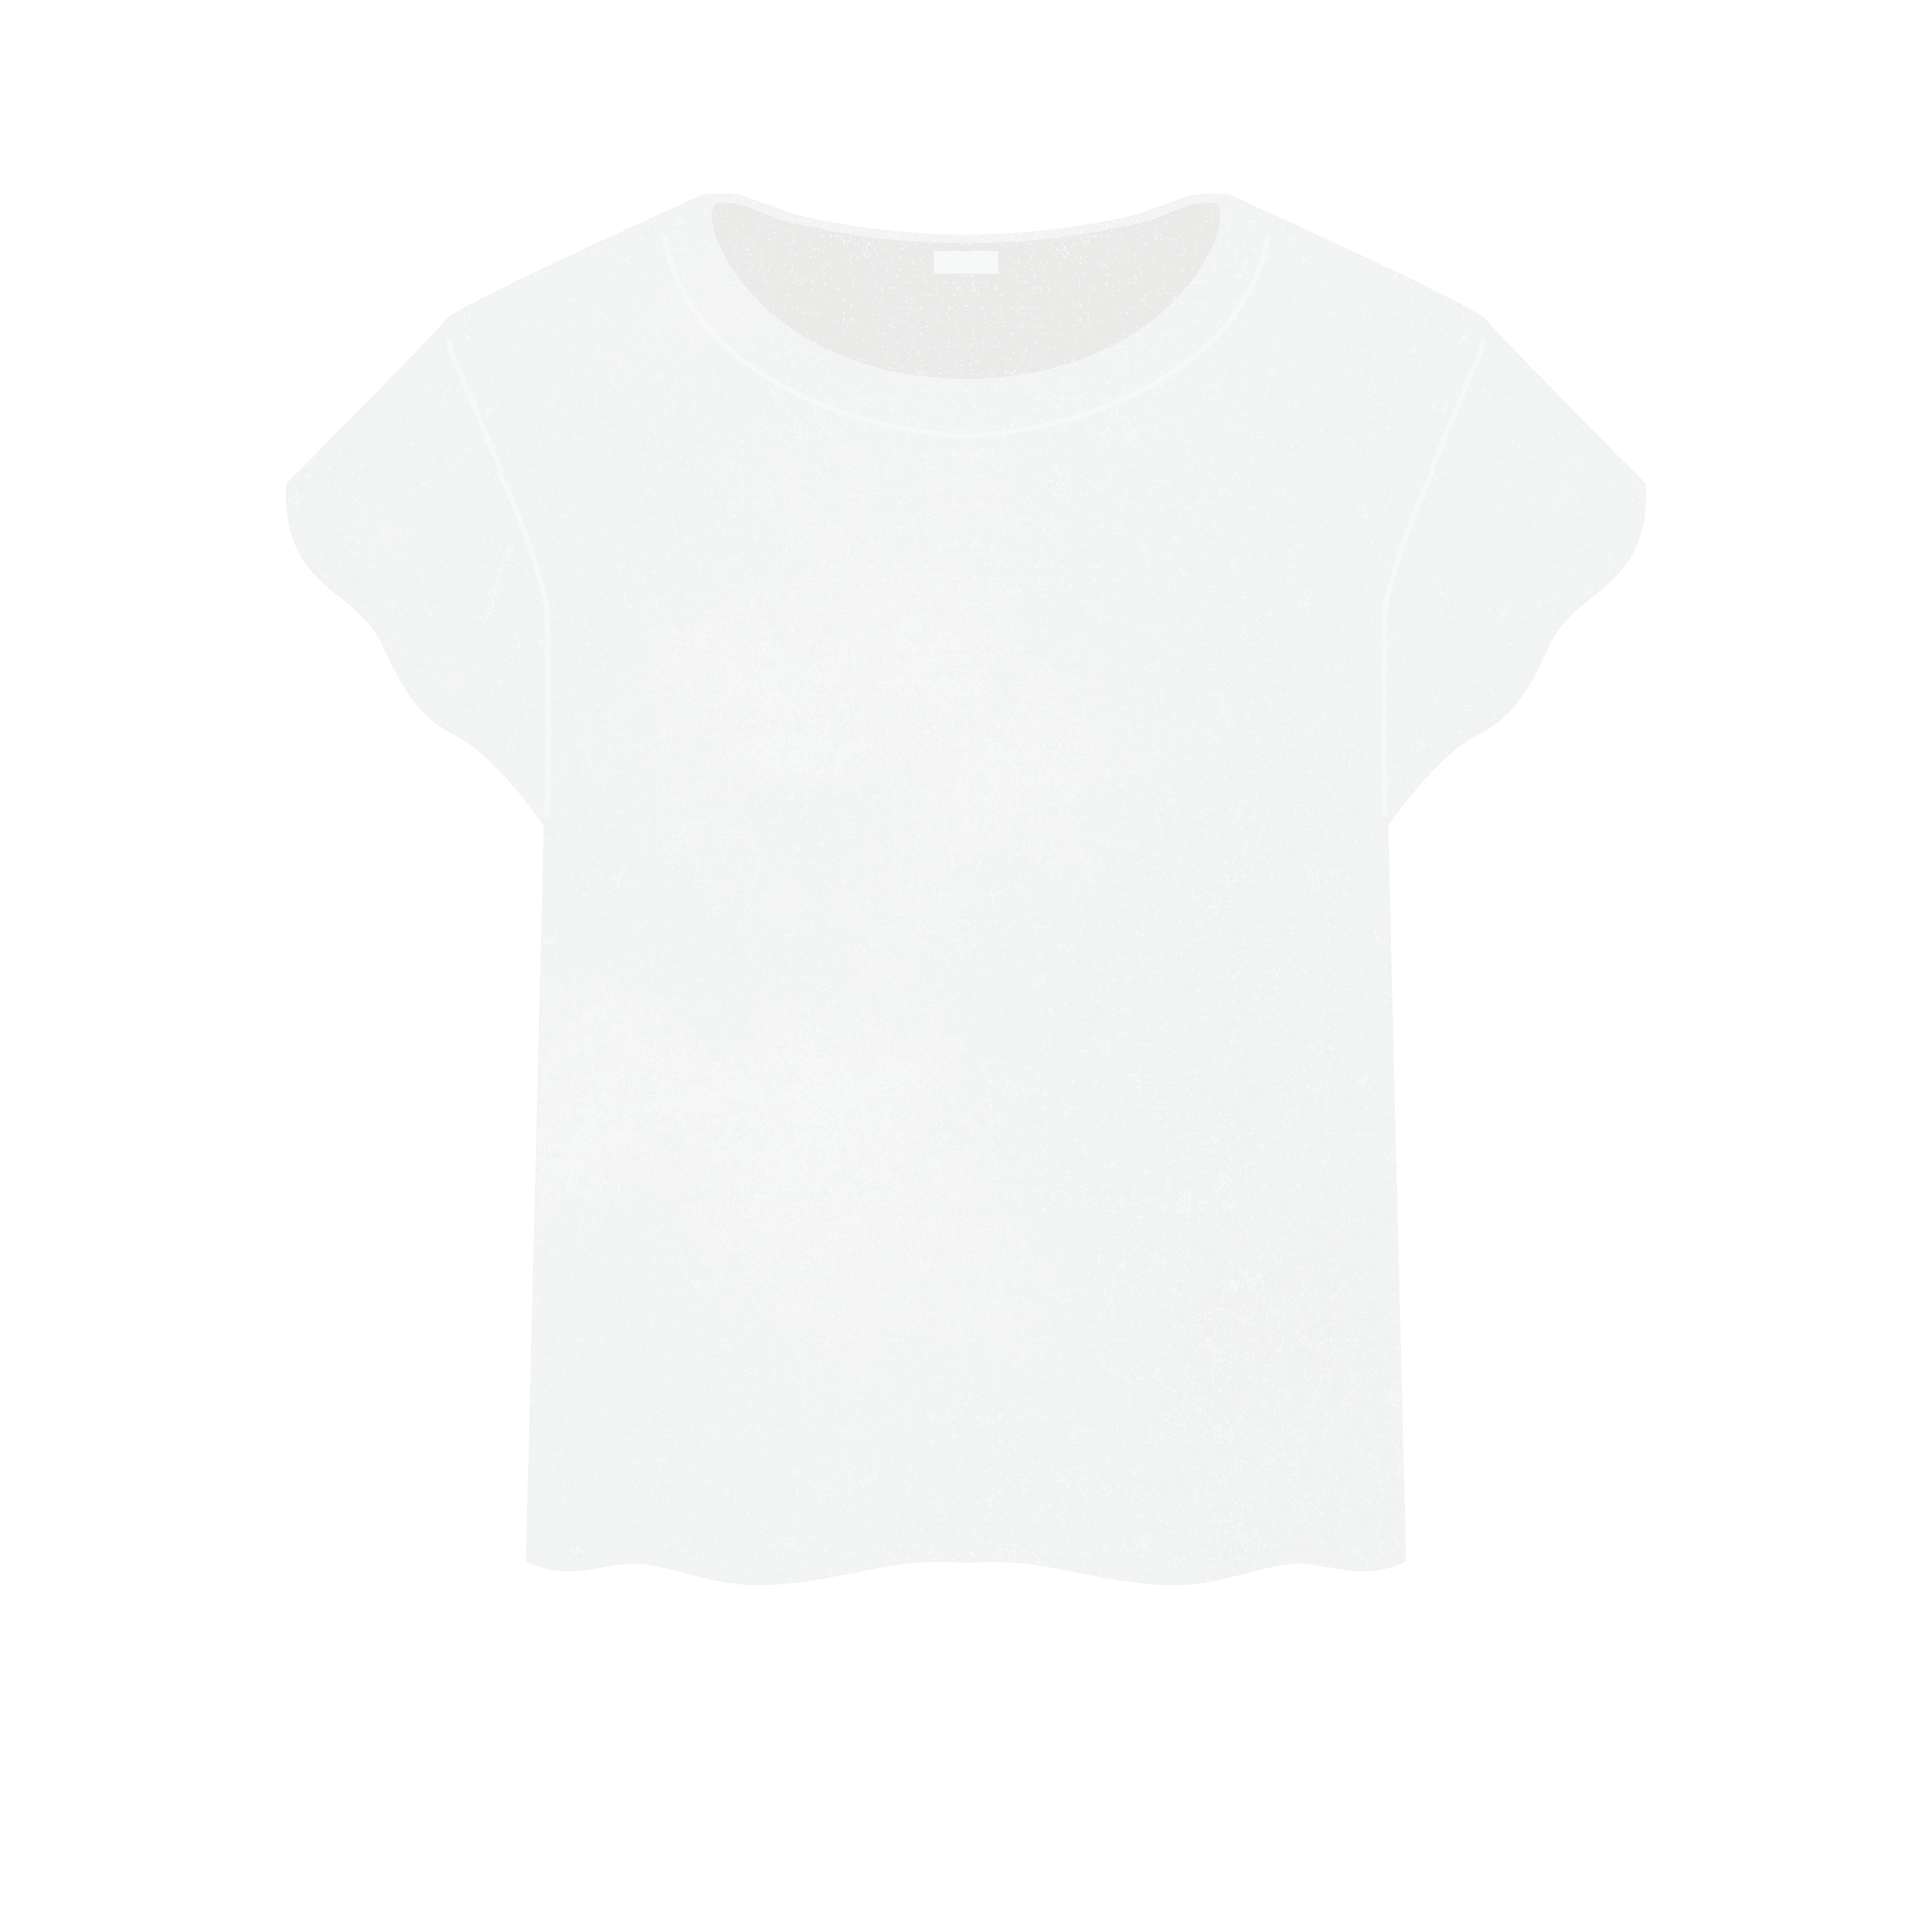 フリー素材 骨格診断 Tシャツのイラスト イメコンのデザイン わかな Note